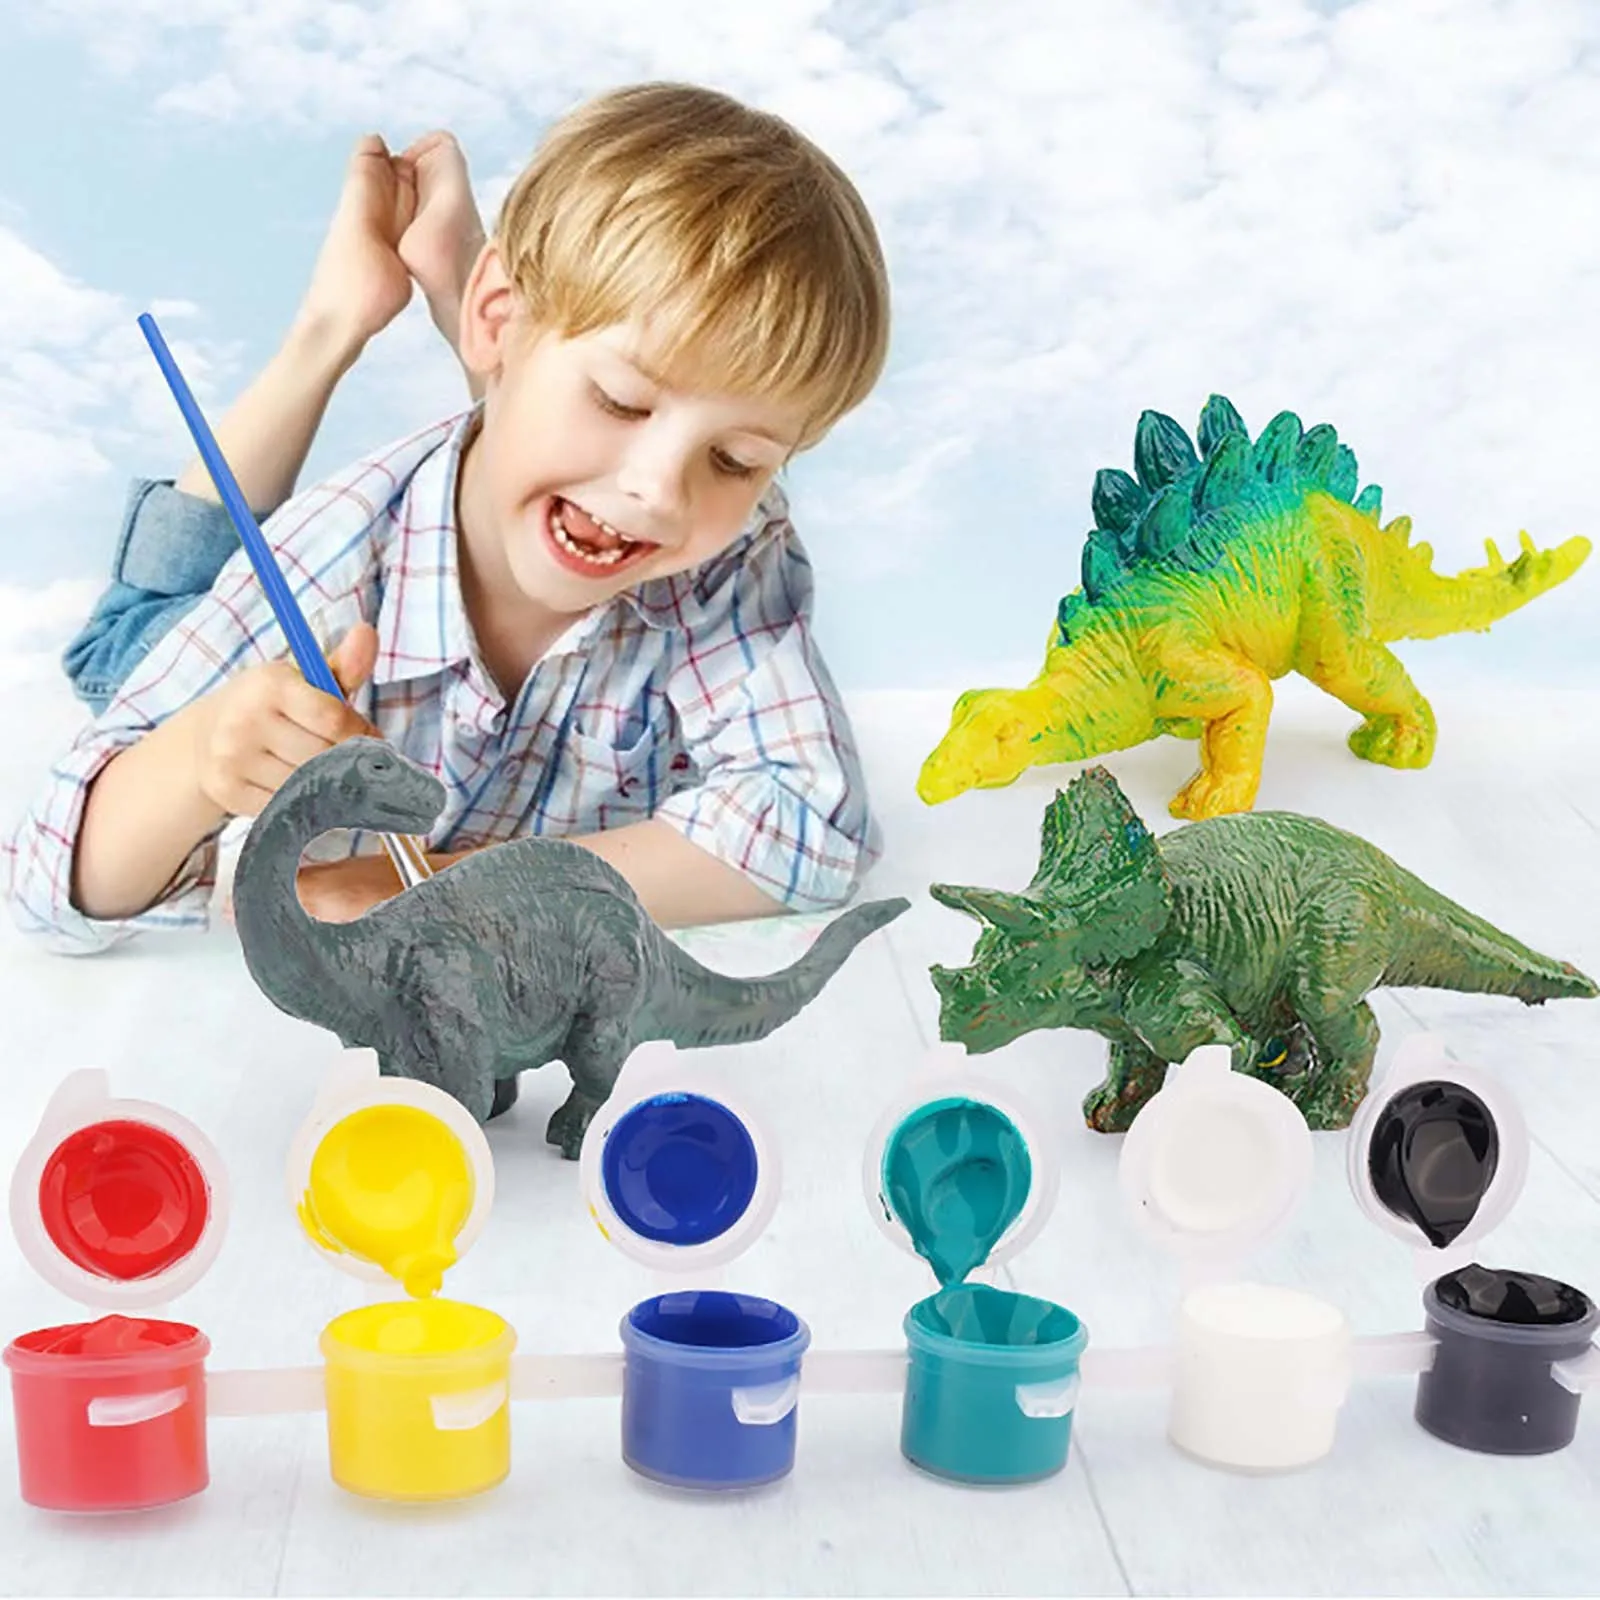 

Набор для творчества и искусства, набор для рисования, динозавры, игрушки, товары для творчества, Развивающие веселые игрушки, новые игрушки...